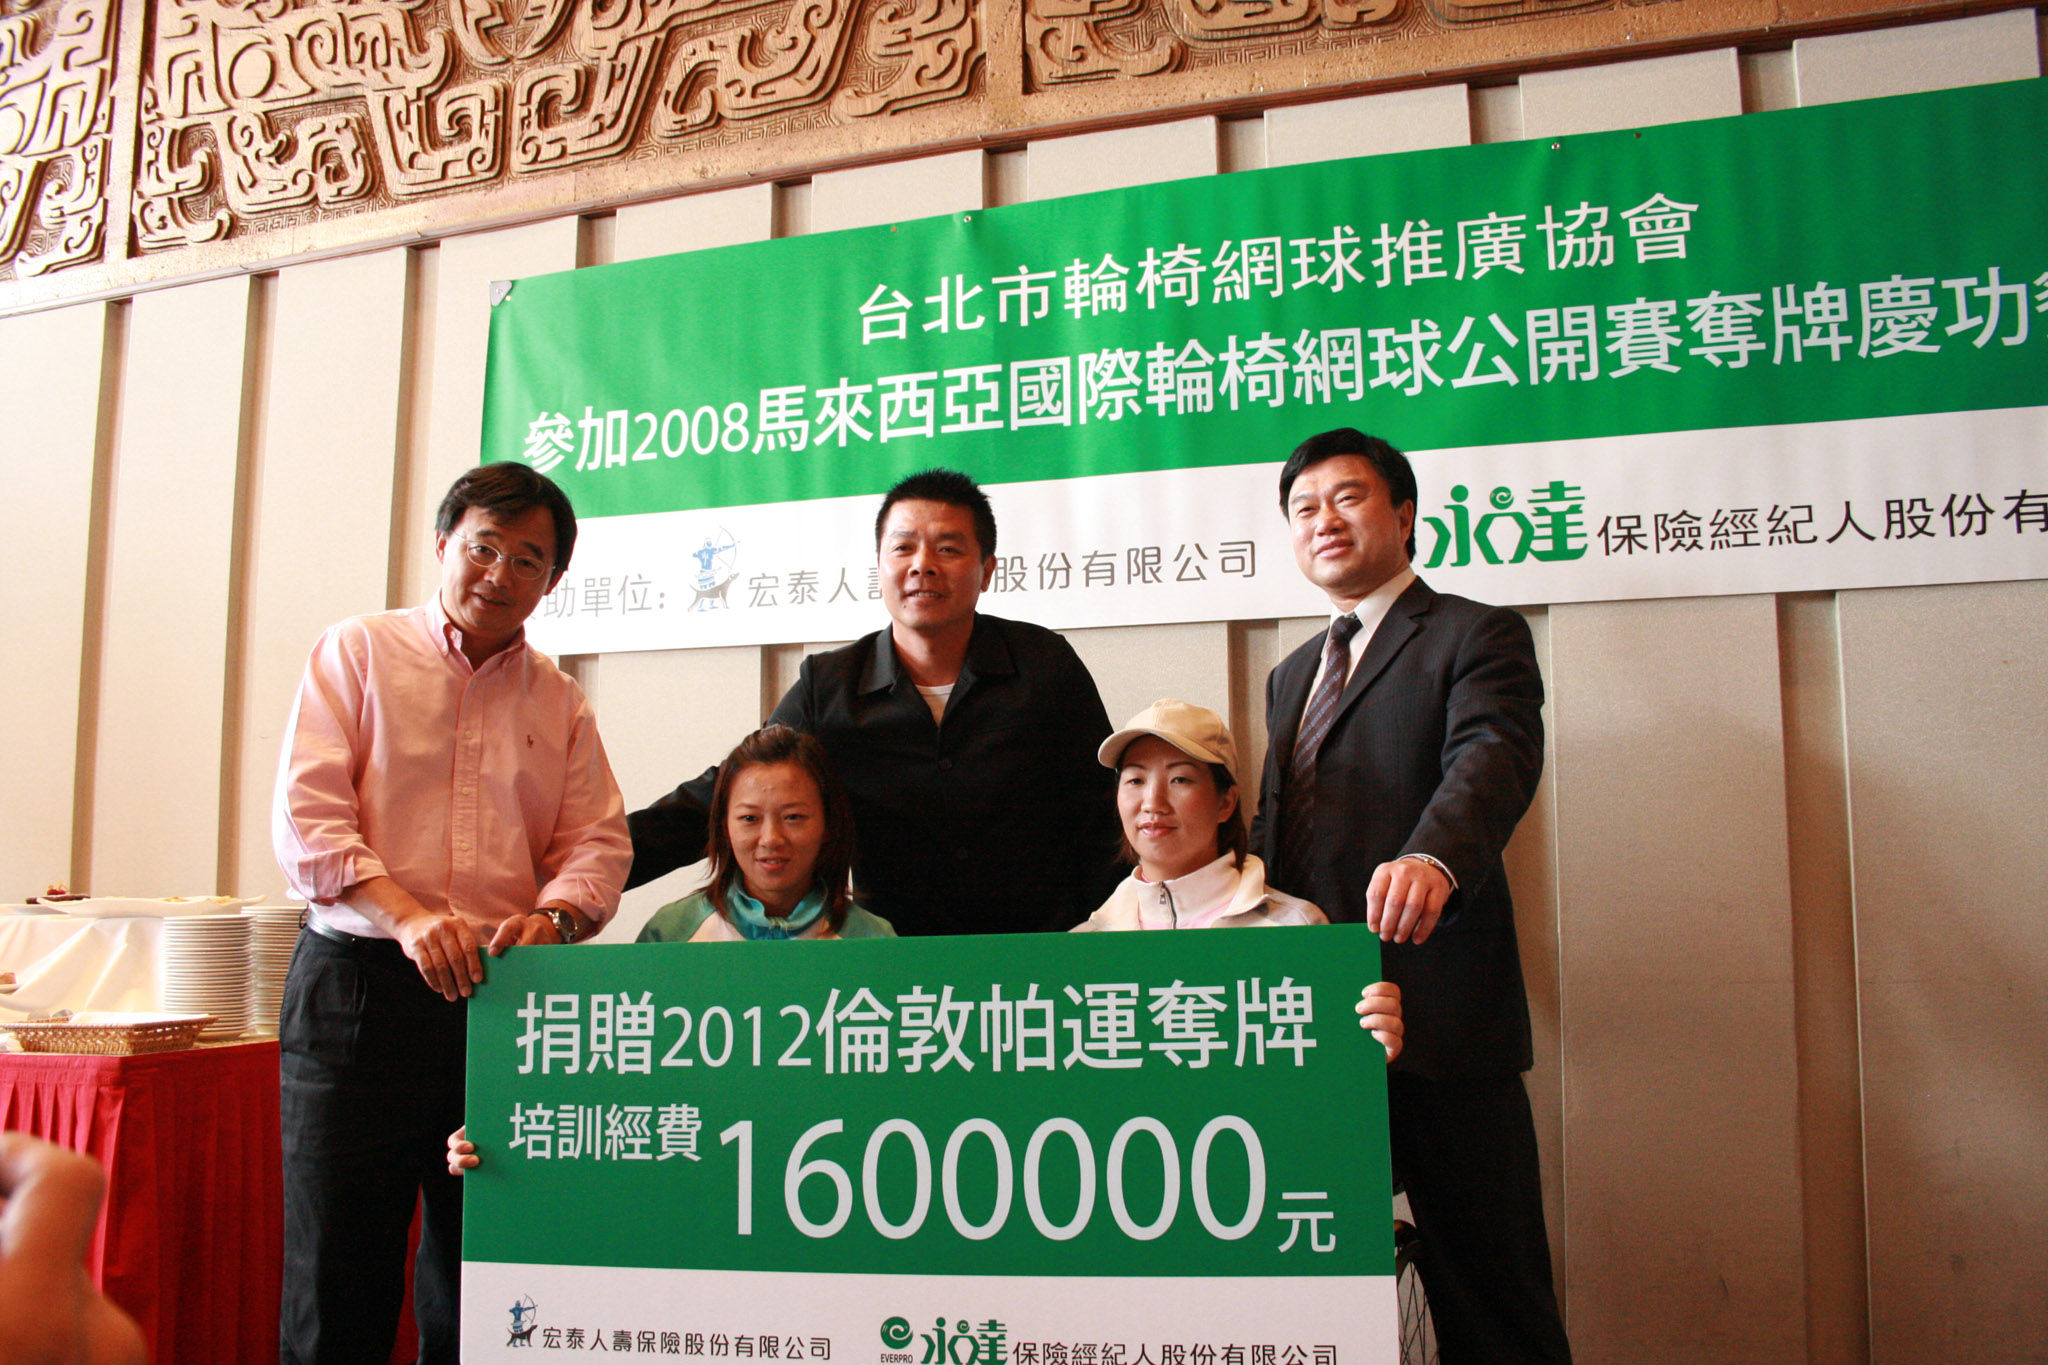 永達及宏泰捐贈160萬元作為2012年倫敦帕運輪椅網球選手培訓經費。